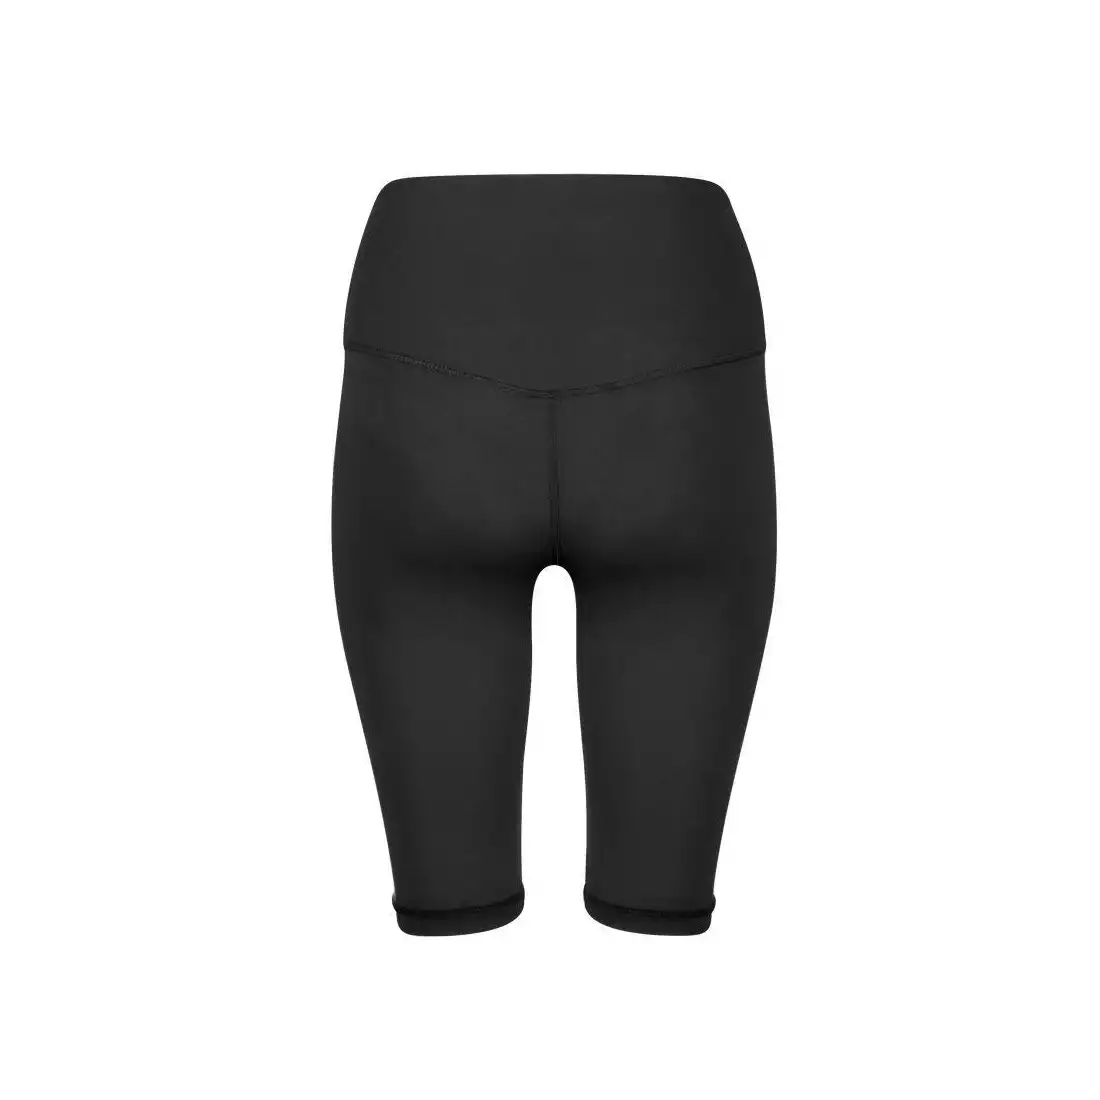 FORCE SIMPLE pantaloni scurți sport de damă, negru